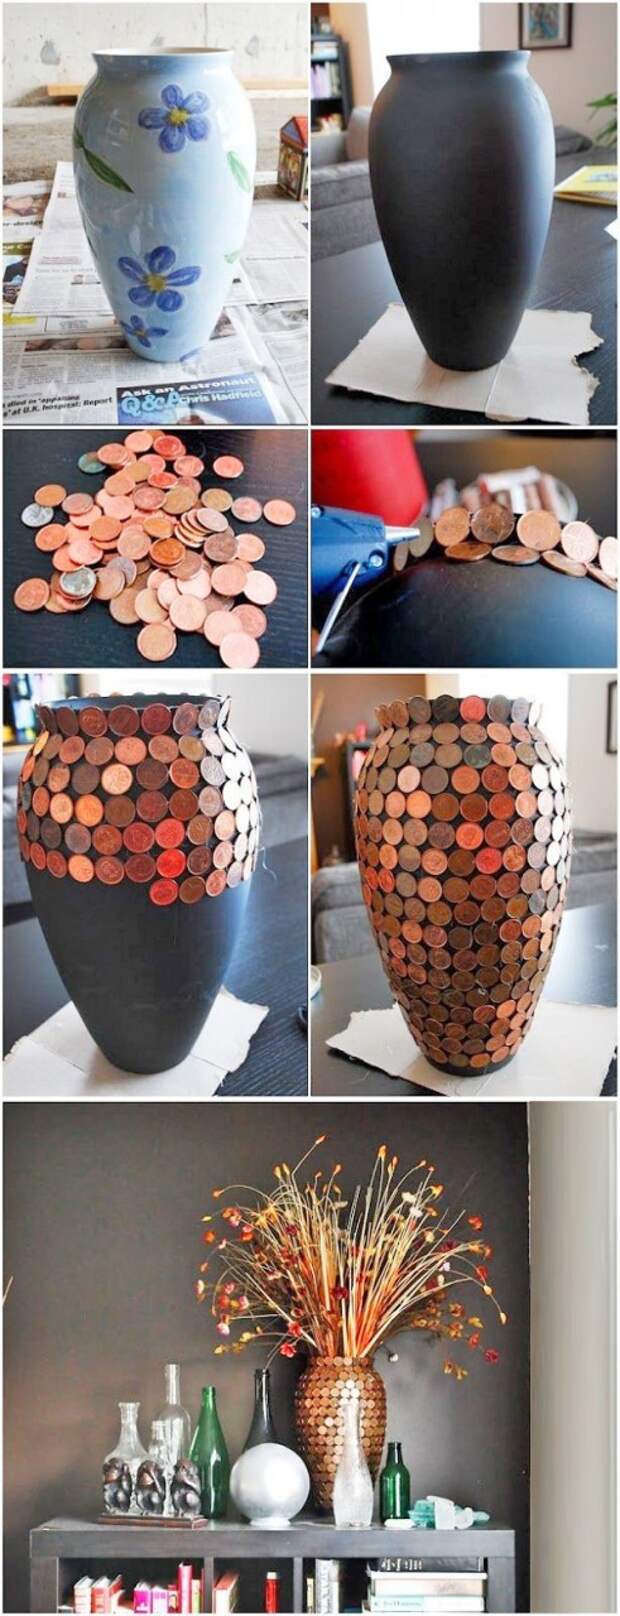 Обычные вазы можно превратить в привлекающие внимание, интересные вещи. Обклеить их монетами — проще простого, а эффект! дизайн, креатив, монета, украшение